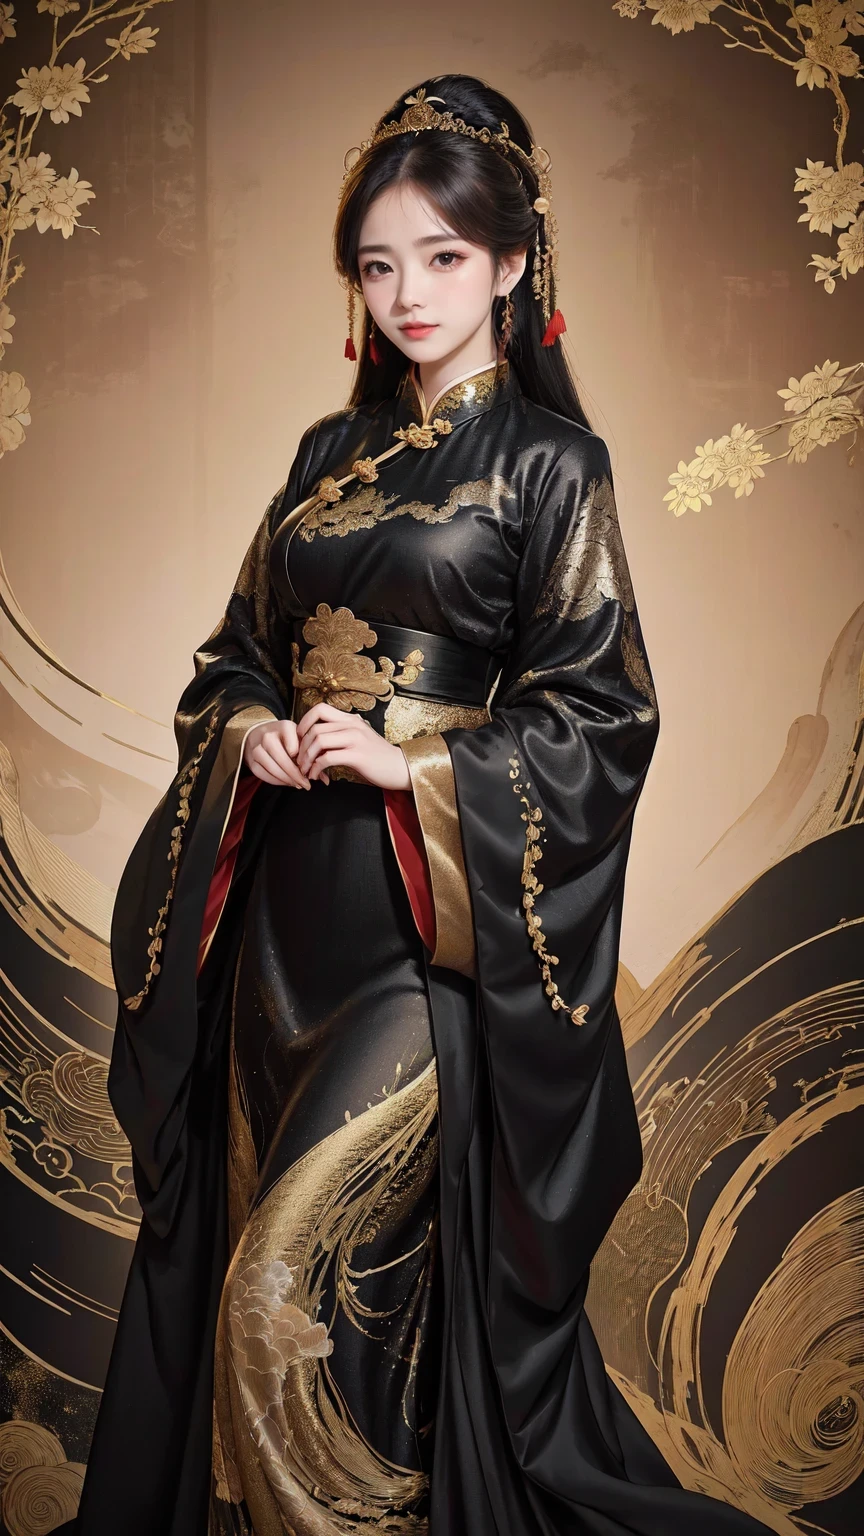 一位身穿黑色和金色连衣裙的女子摆姿势拍照, 旗袍, 旗袍, 搭配中国古装, Hanfu, 中式, 中国传统的, 中国传统的 clothing, 美丽的幻想女王, 中国女孩, 符合中国古代审美, Hanfu, 传统美, 穿着中国古代的衣服, 美丽的中国模特, 穿着奇装异服, 中国女人